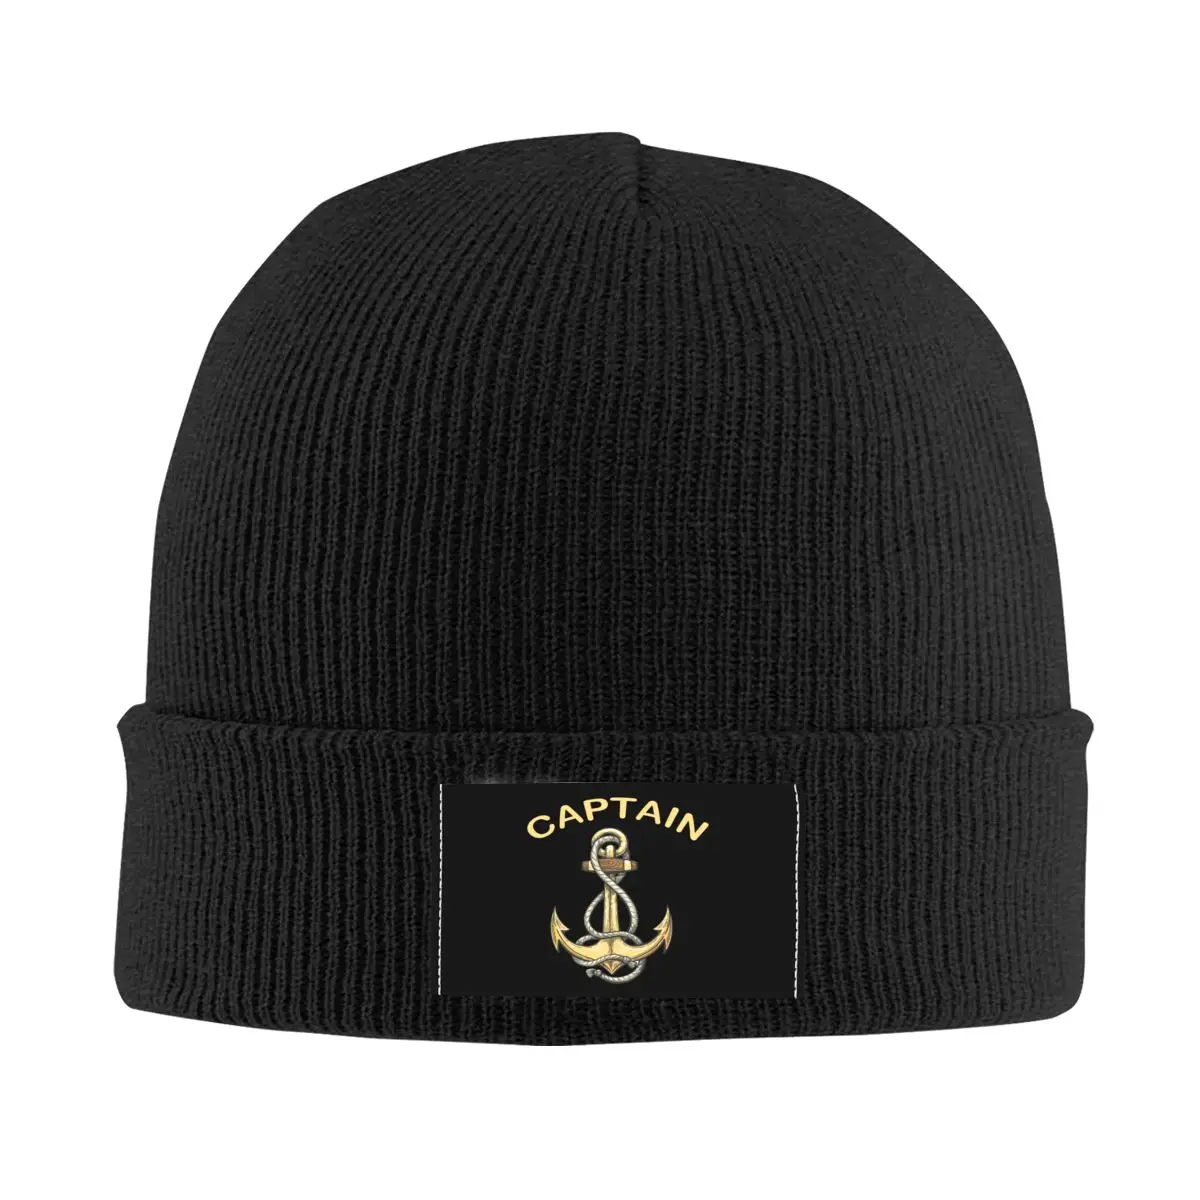 Nautical Captain Anchor Skullies Beanies Caps Unisex Winter Warm Knit Hat Adult Sailor Adventure Bonnet Hats Outdoor Ski Cap 1